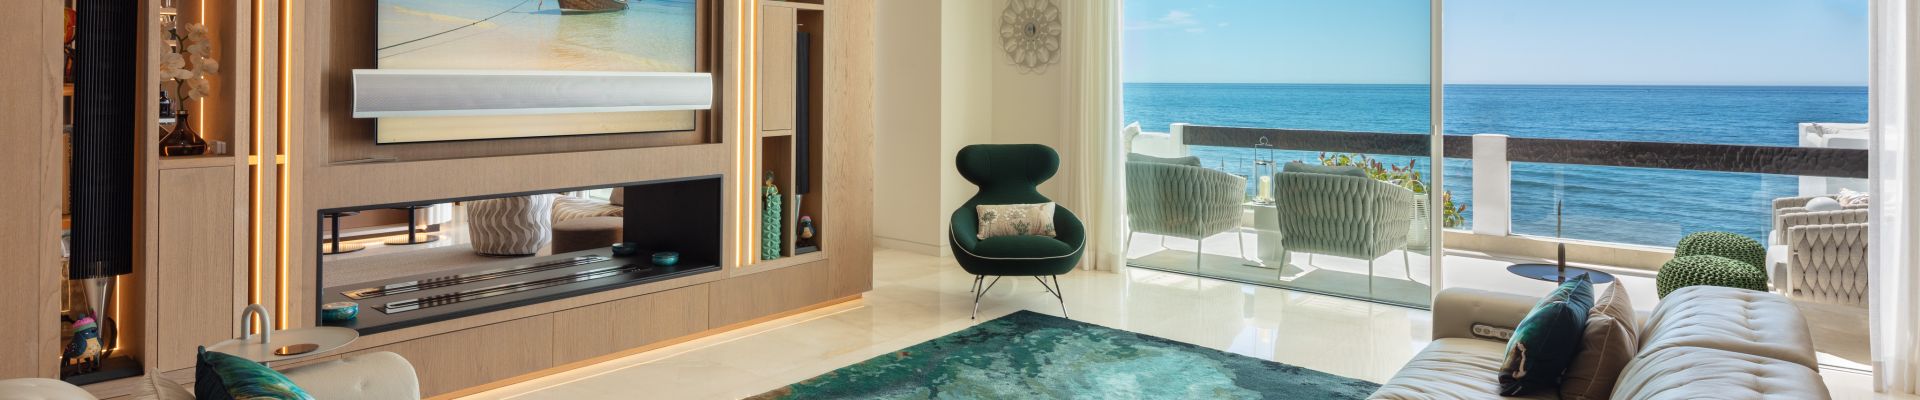 Luxe appartementen te koop aan de Gouden Mijl van Marbella